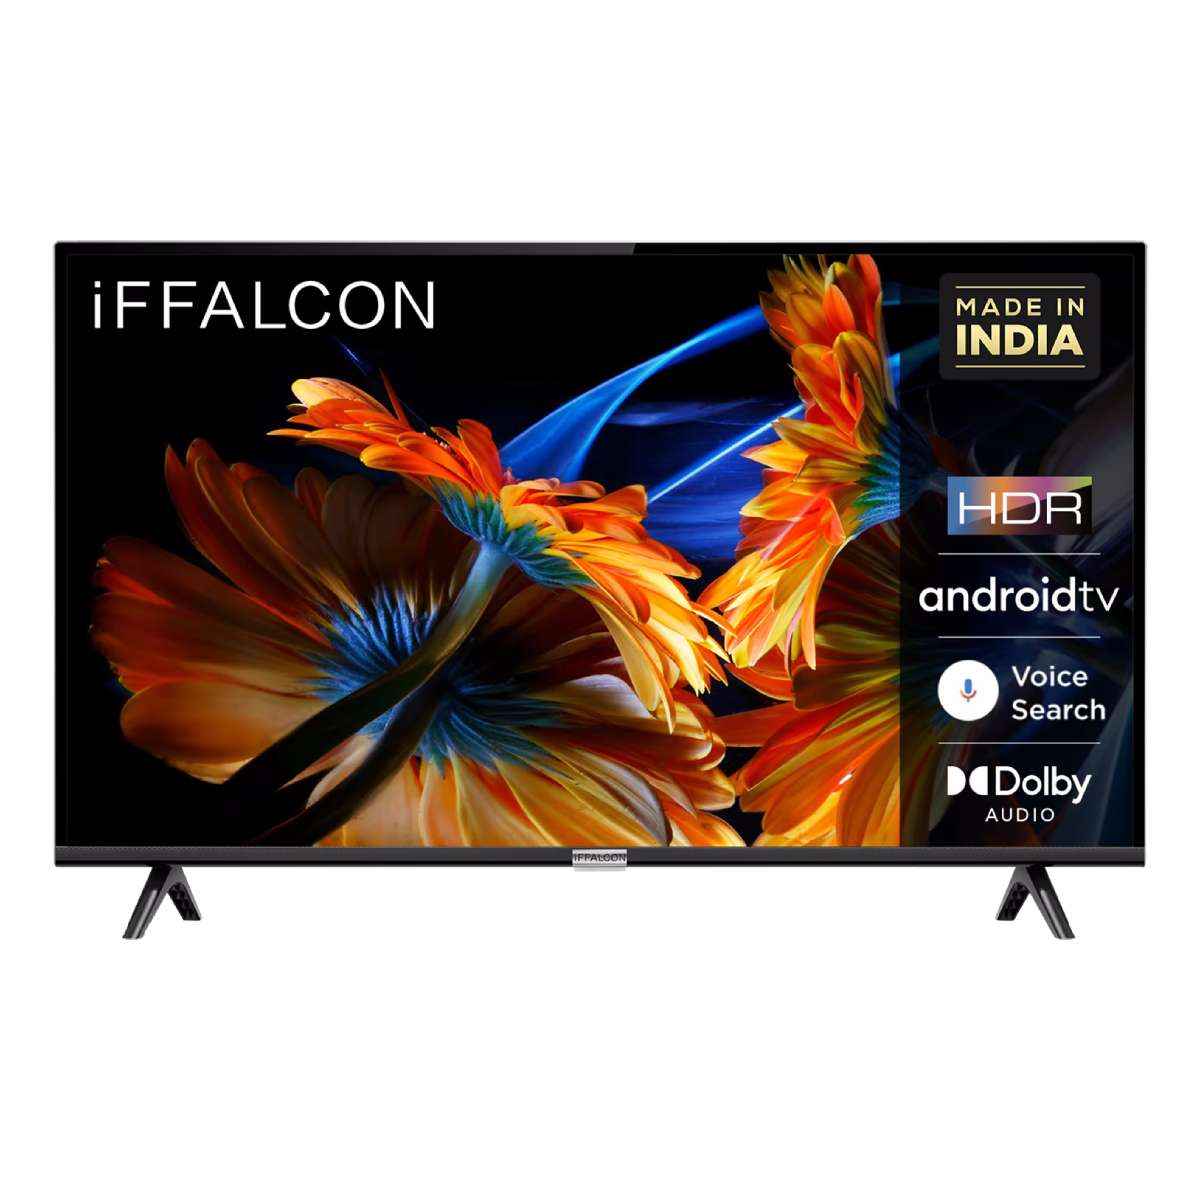 iFFALCON F52 43 ಇಂಚು Full HD LED TV 